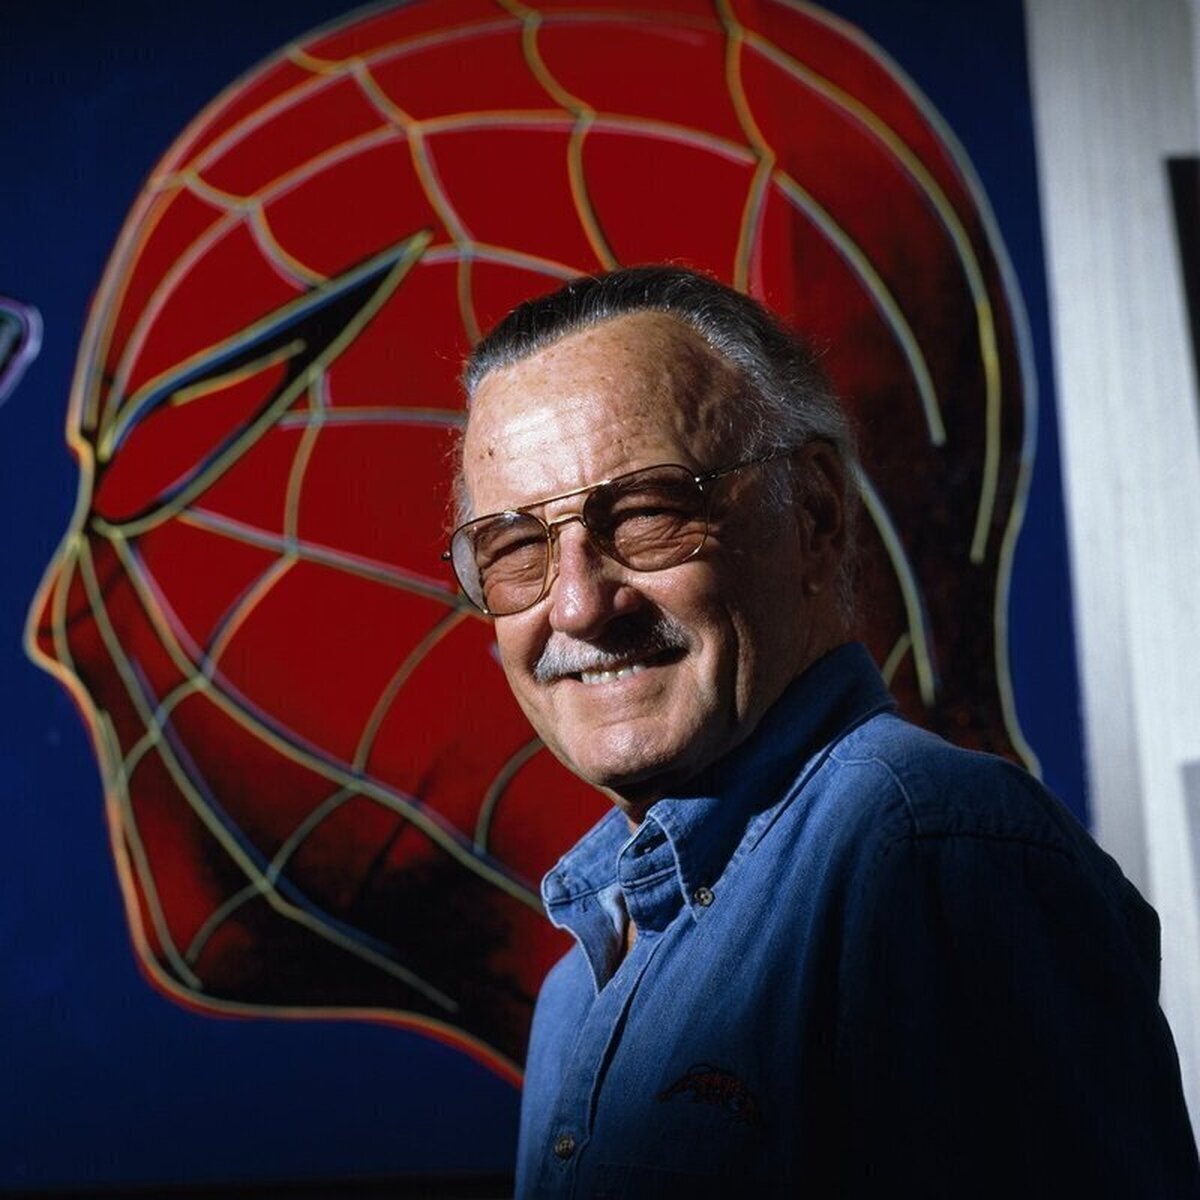 Stan Lee hoy cumpliría 100 años. ¡Excelsior!  